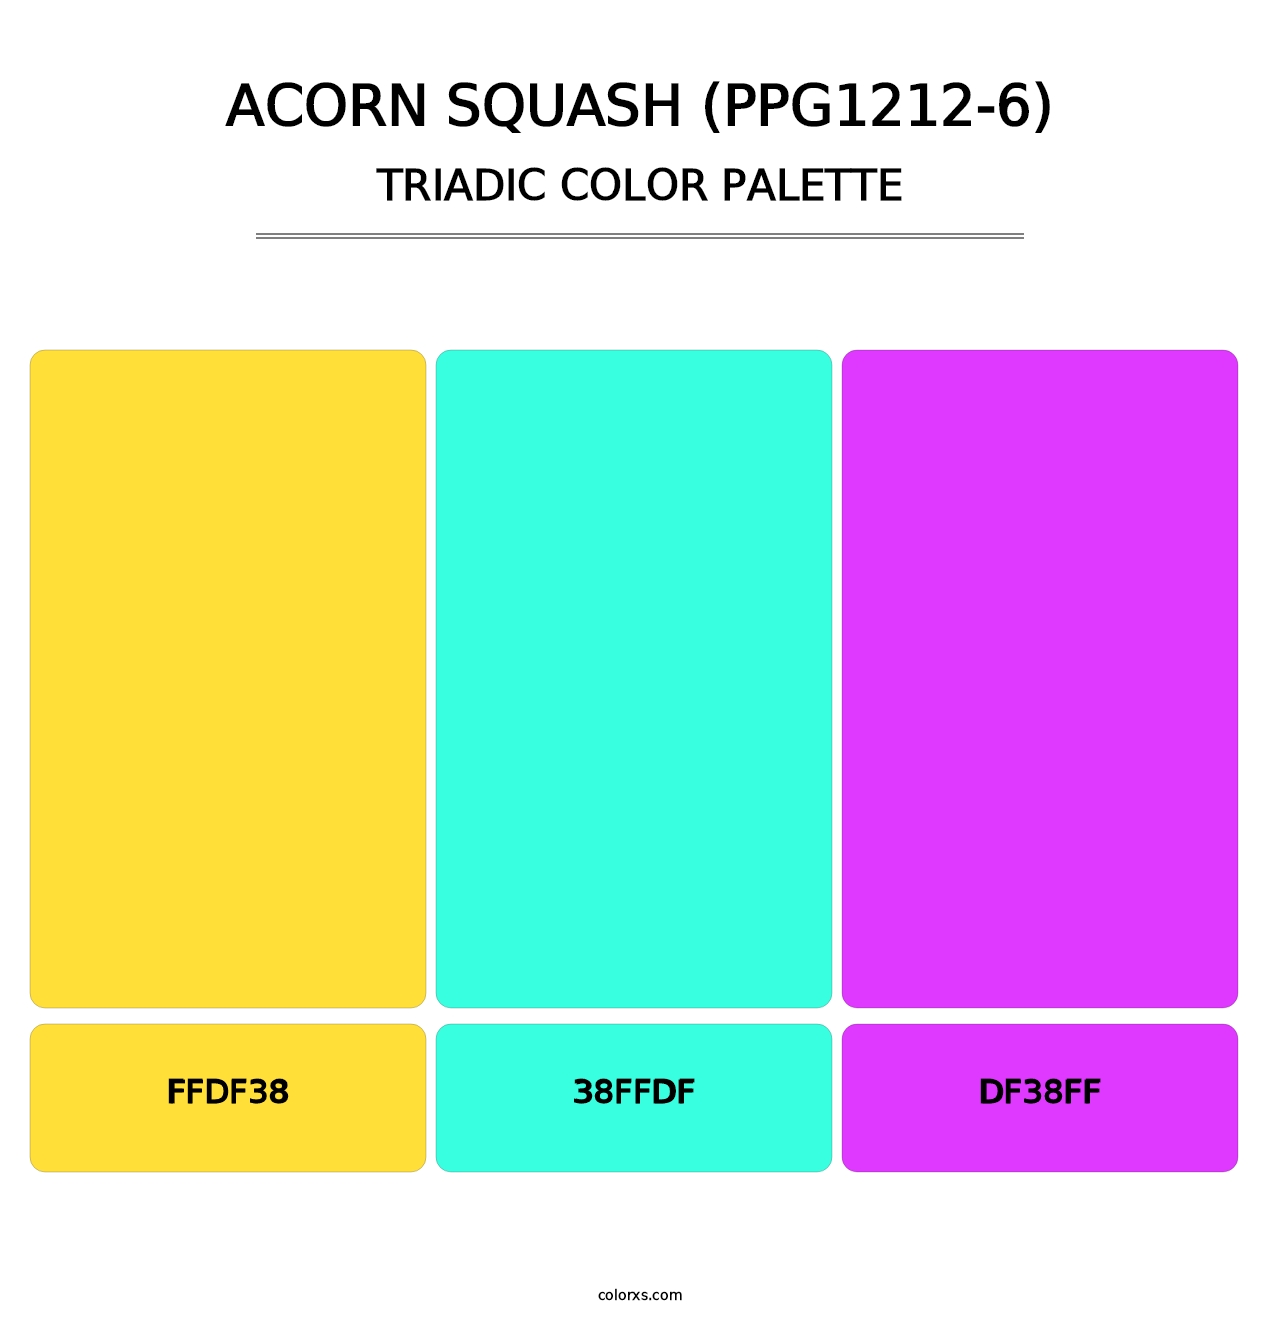 Acorn Squash (PPG1212-6) - Triadic Color Palette